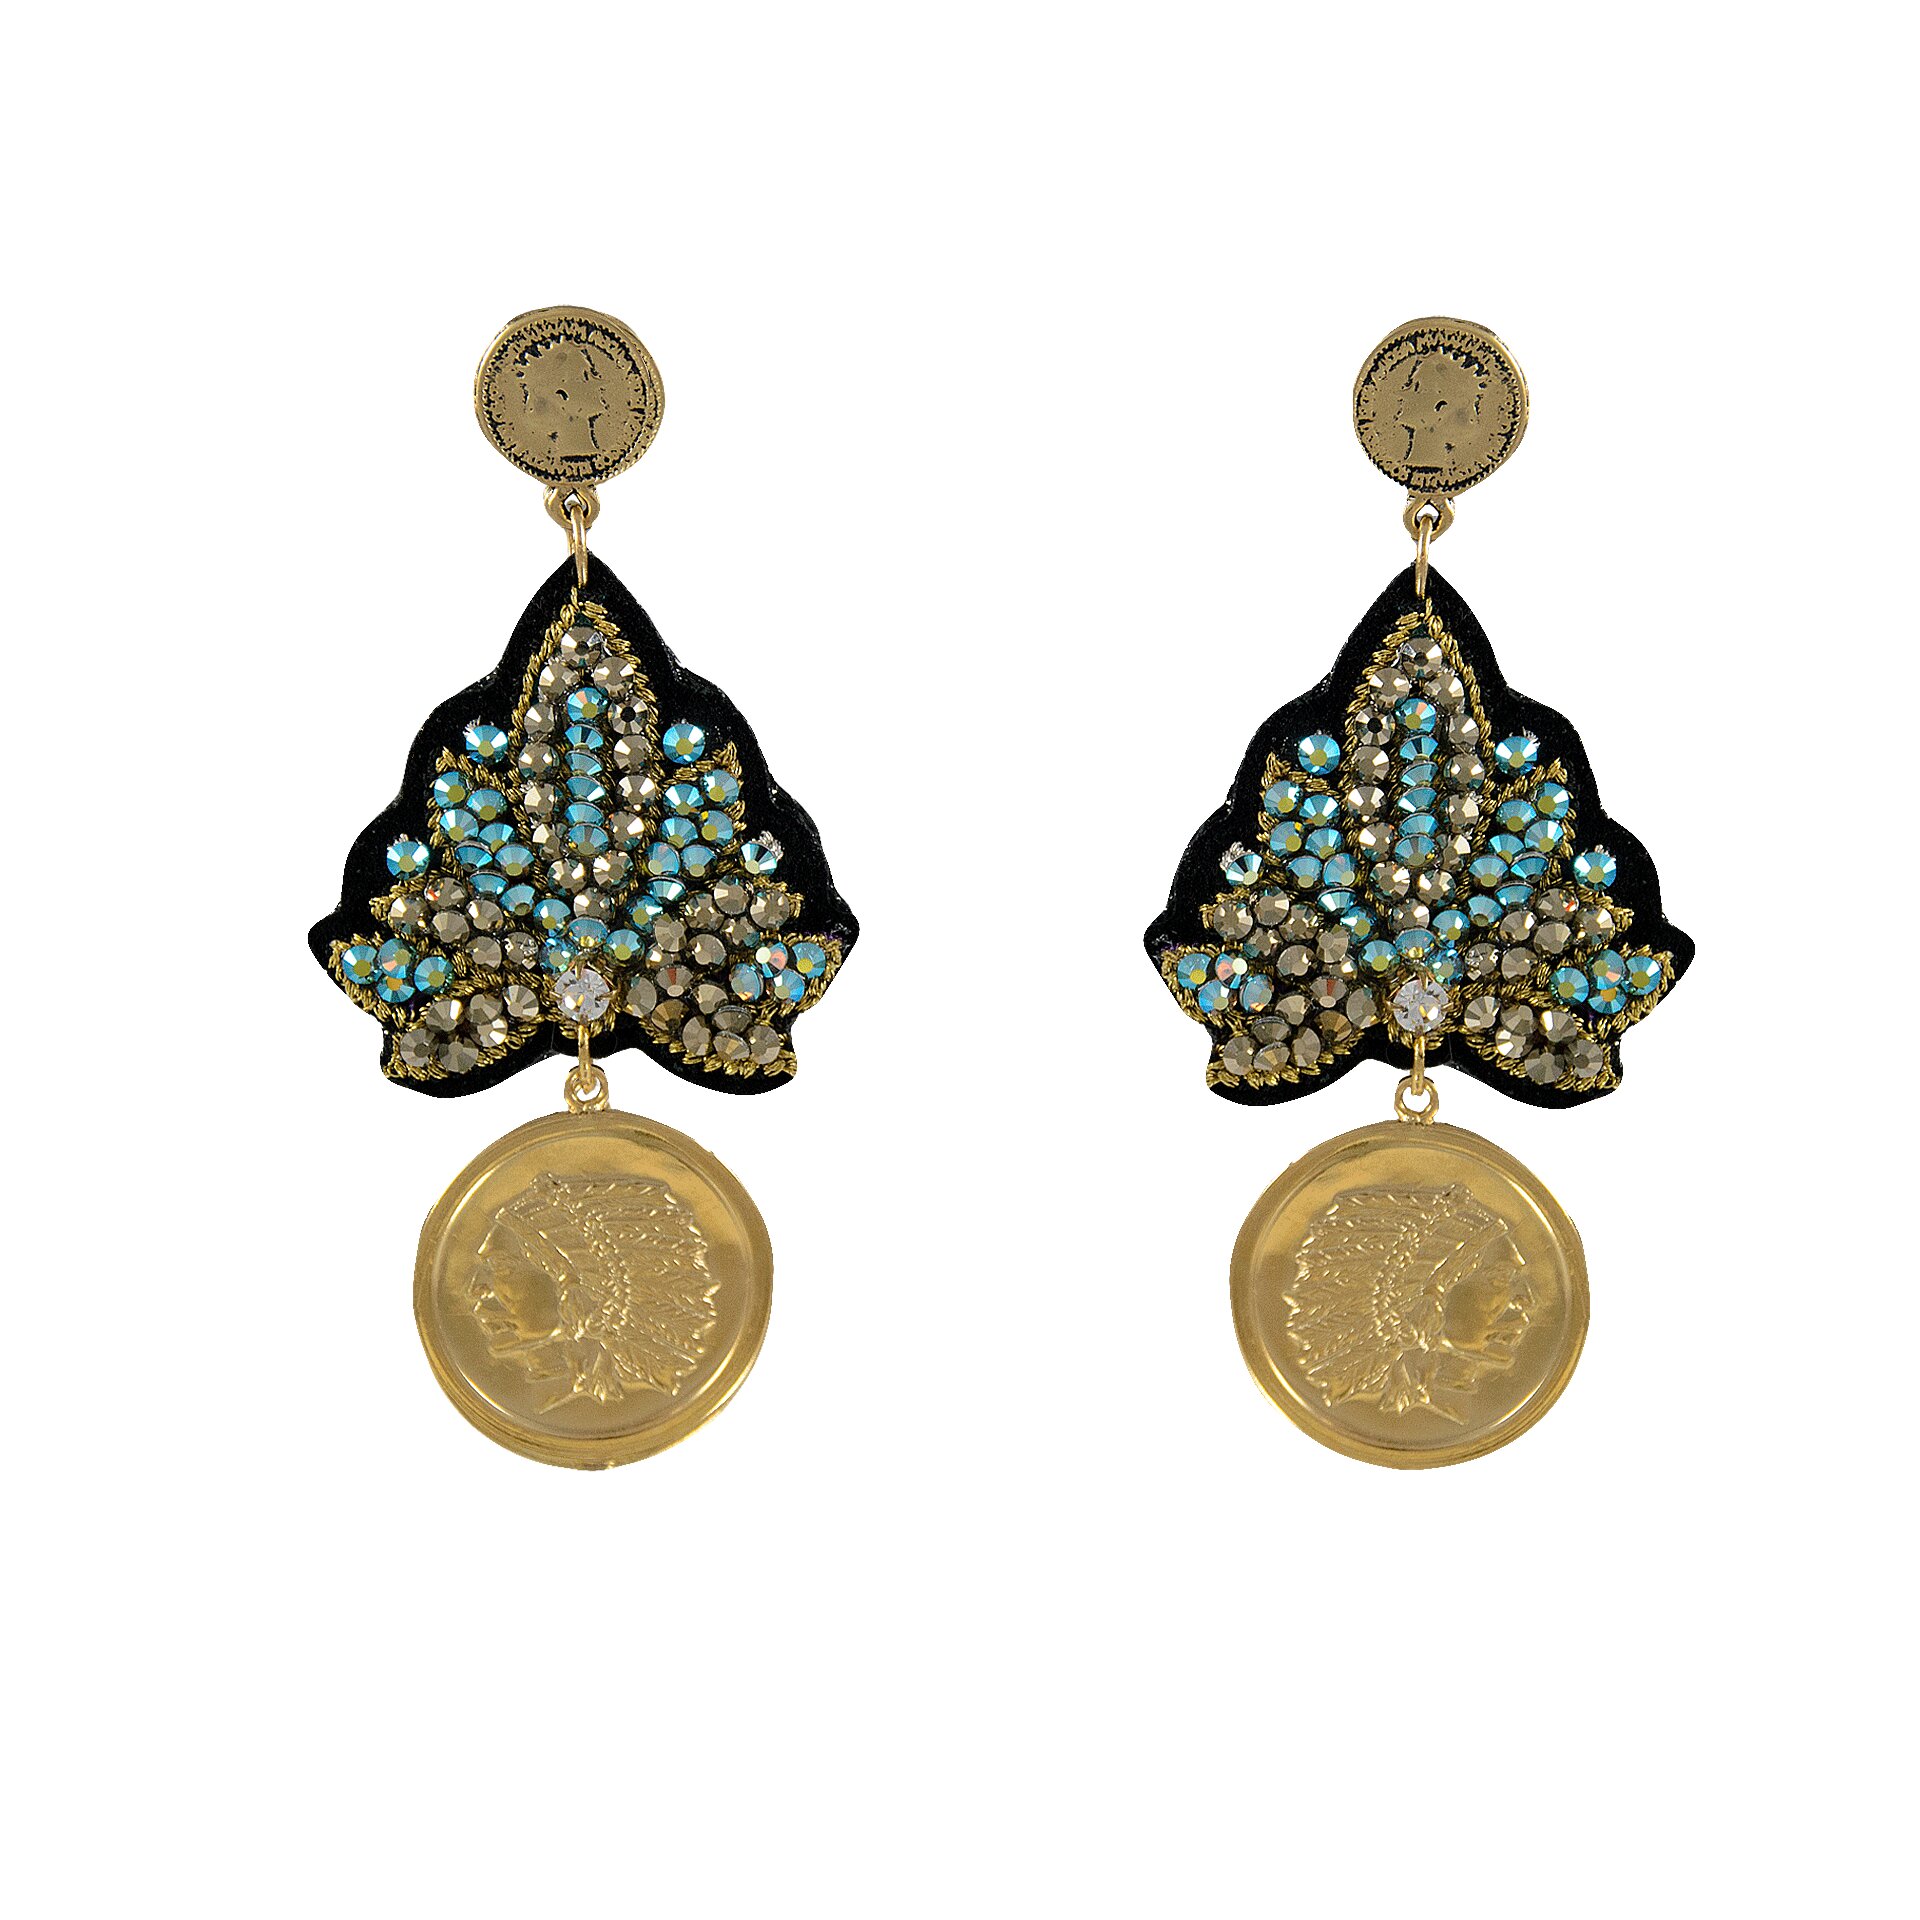 LINDA'S DREAM orecchini blu indiano con elementi in oro